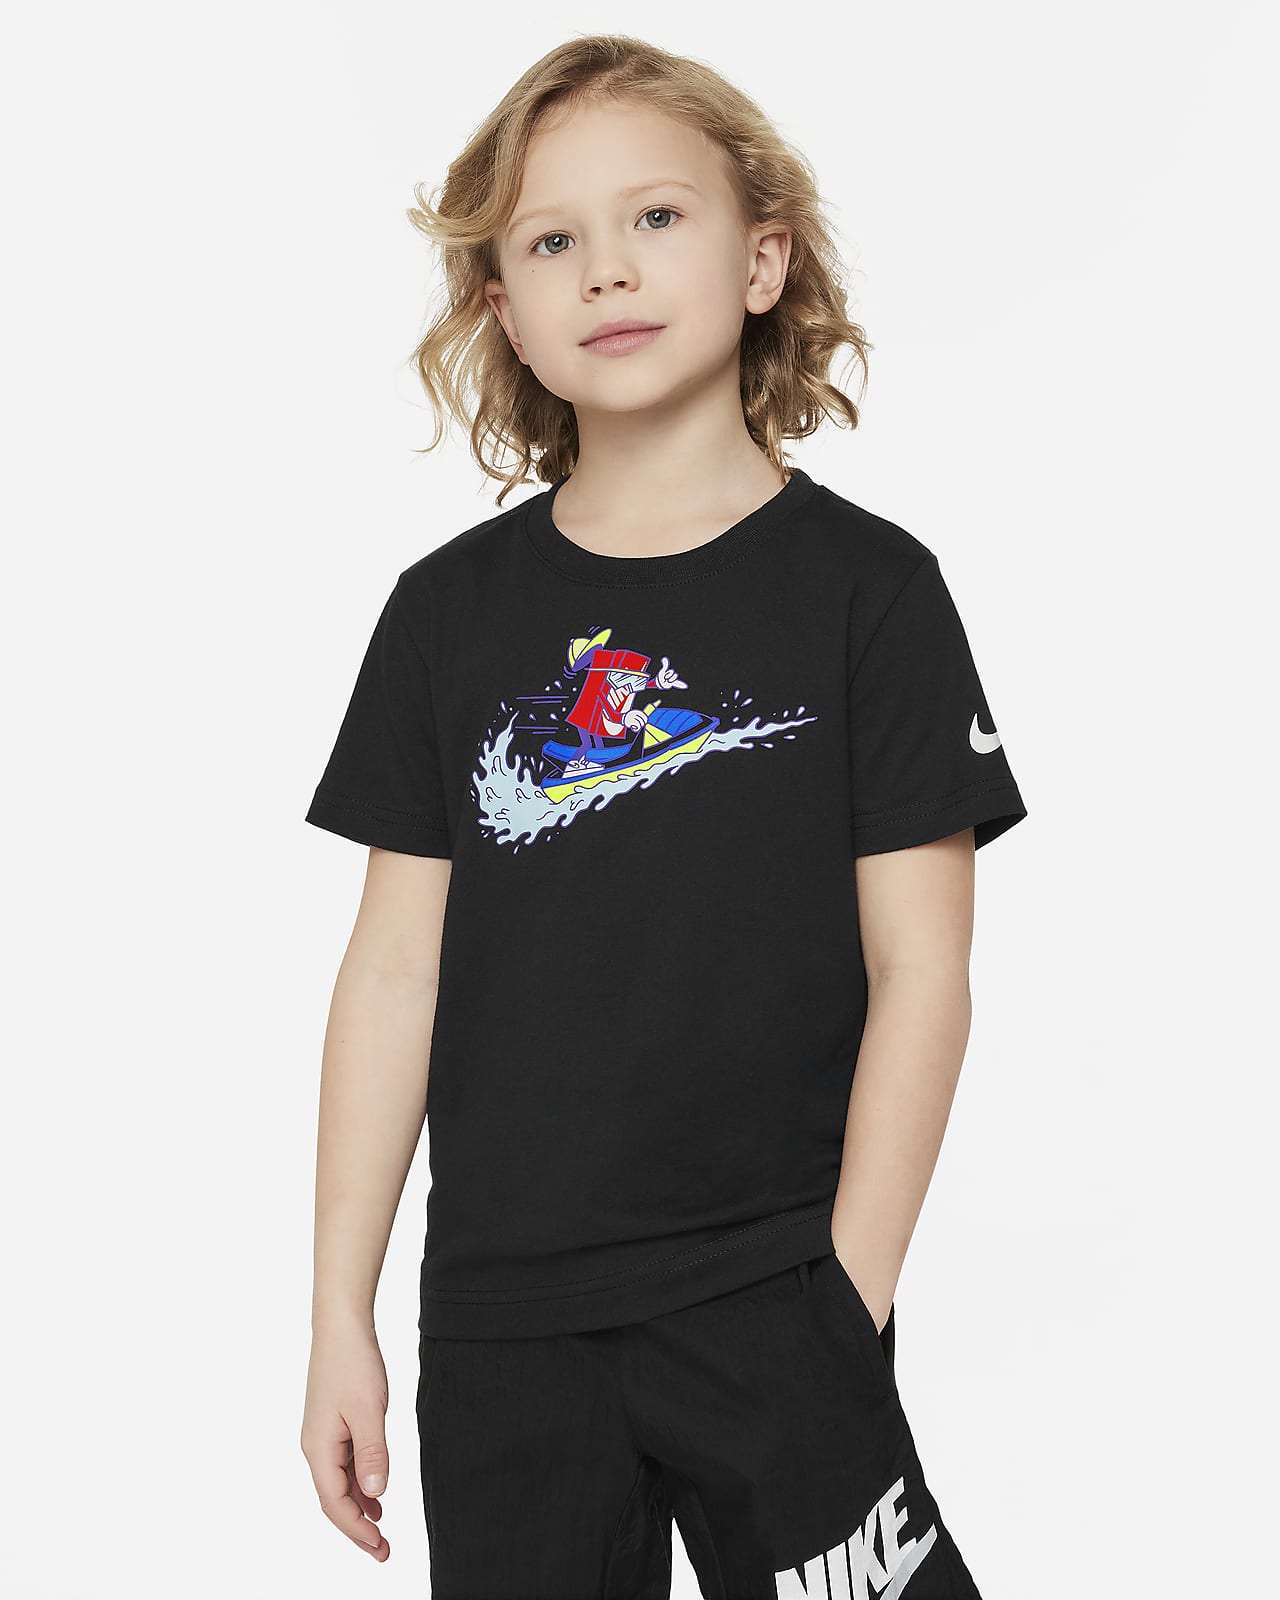 Nike Camiseta Boxy Jet Ski - Niño/a pequeño/a